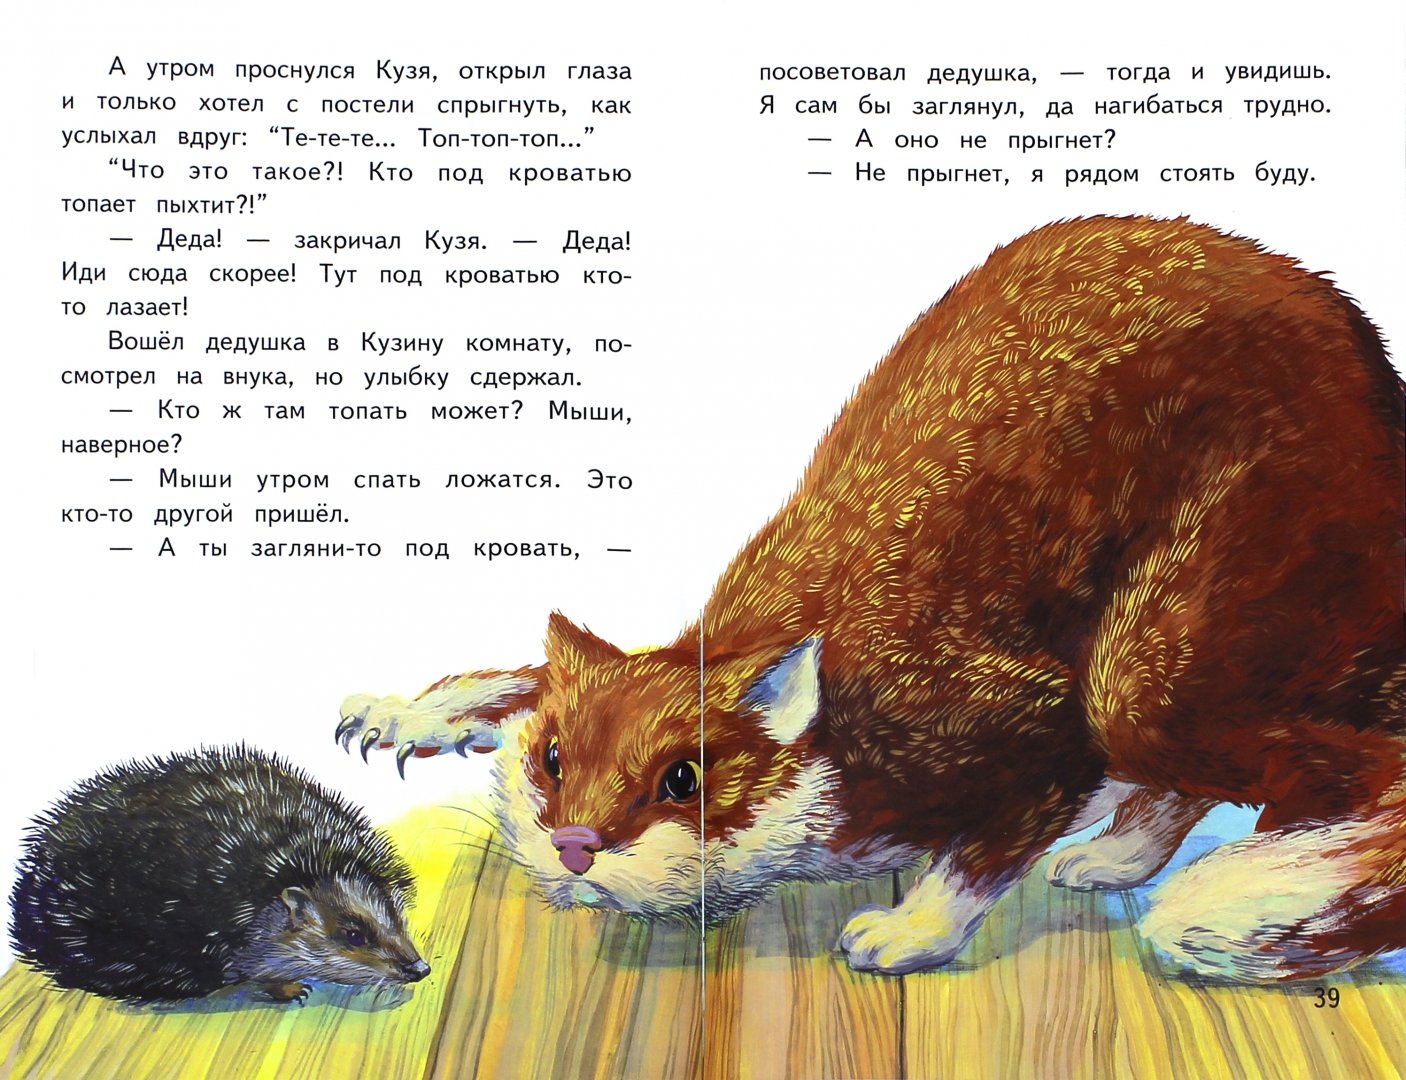 Иллюстрация 1 из 11 для Чудеса в решете - Михаил Каришнев-Лубоцкий | Лабиринт - книги. Источник: Лабиринт